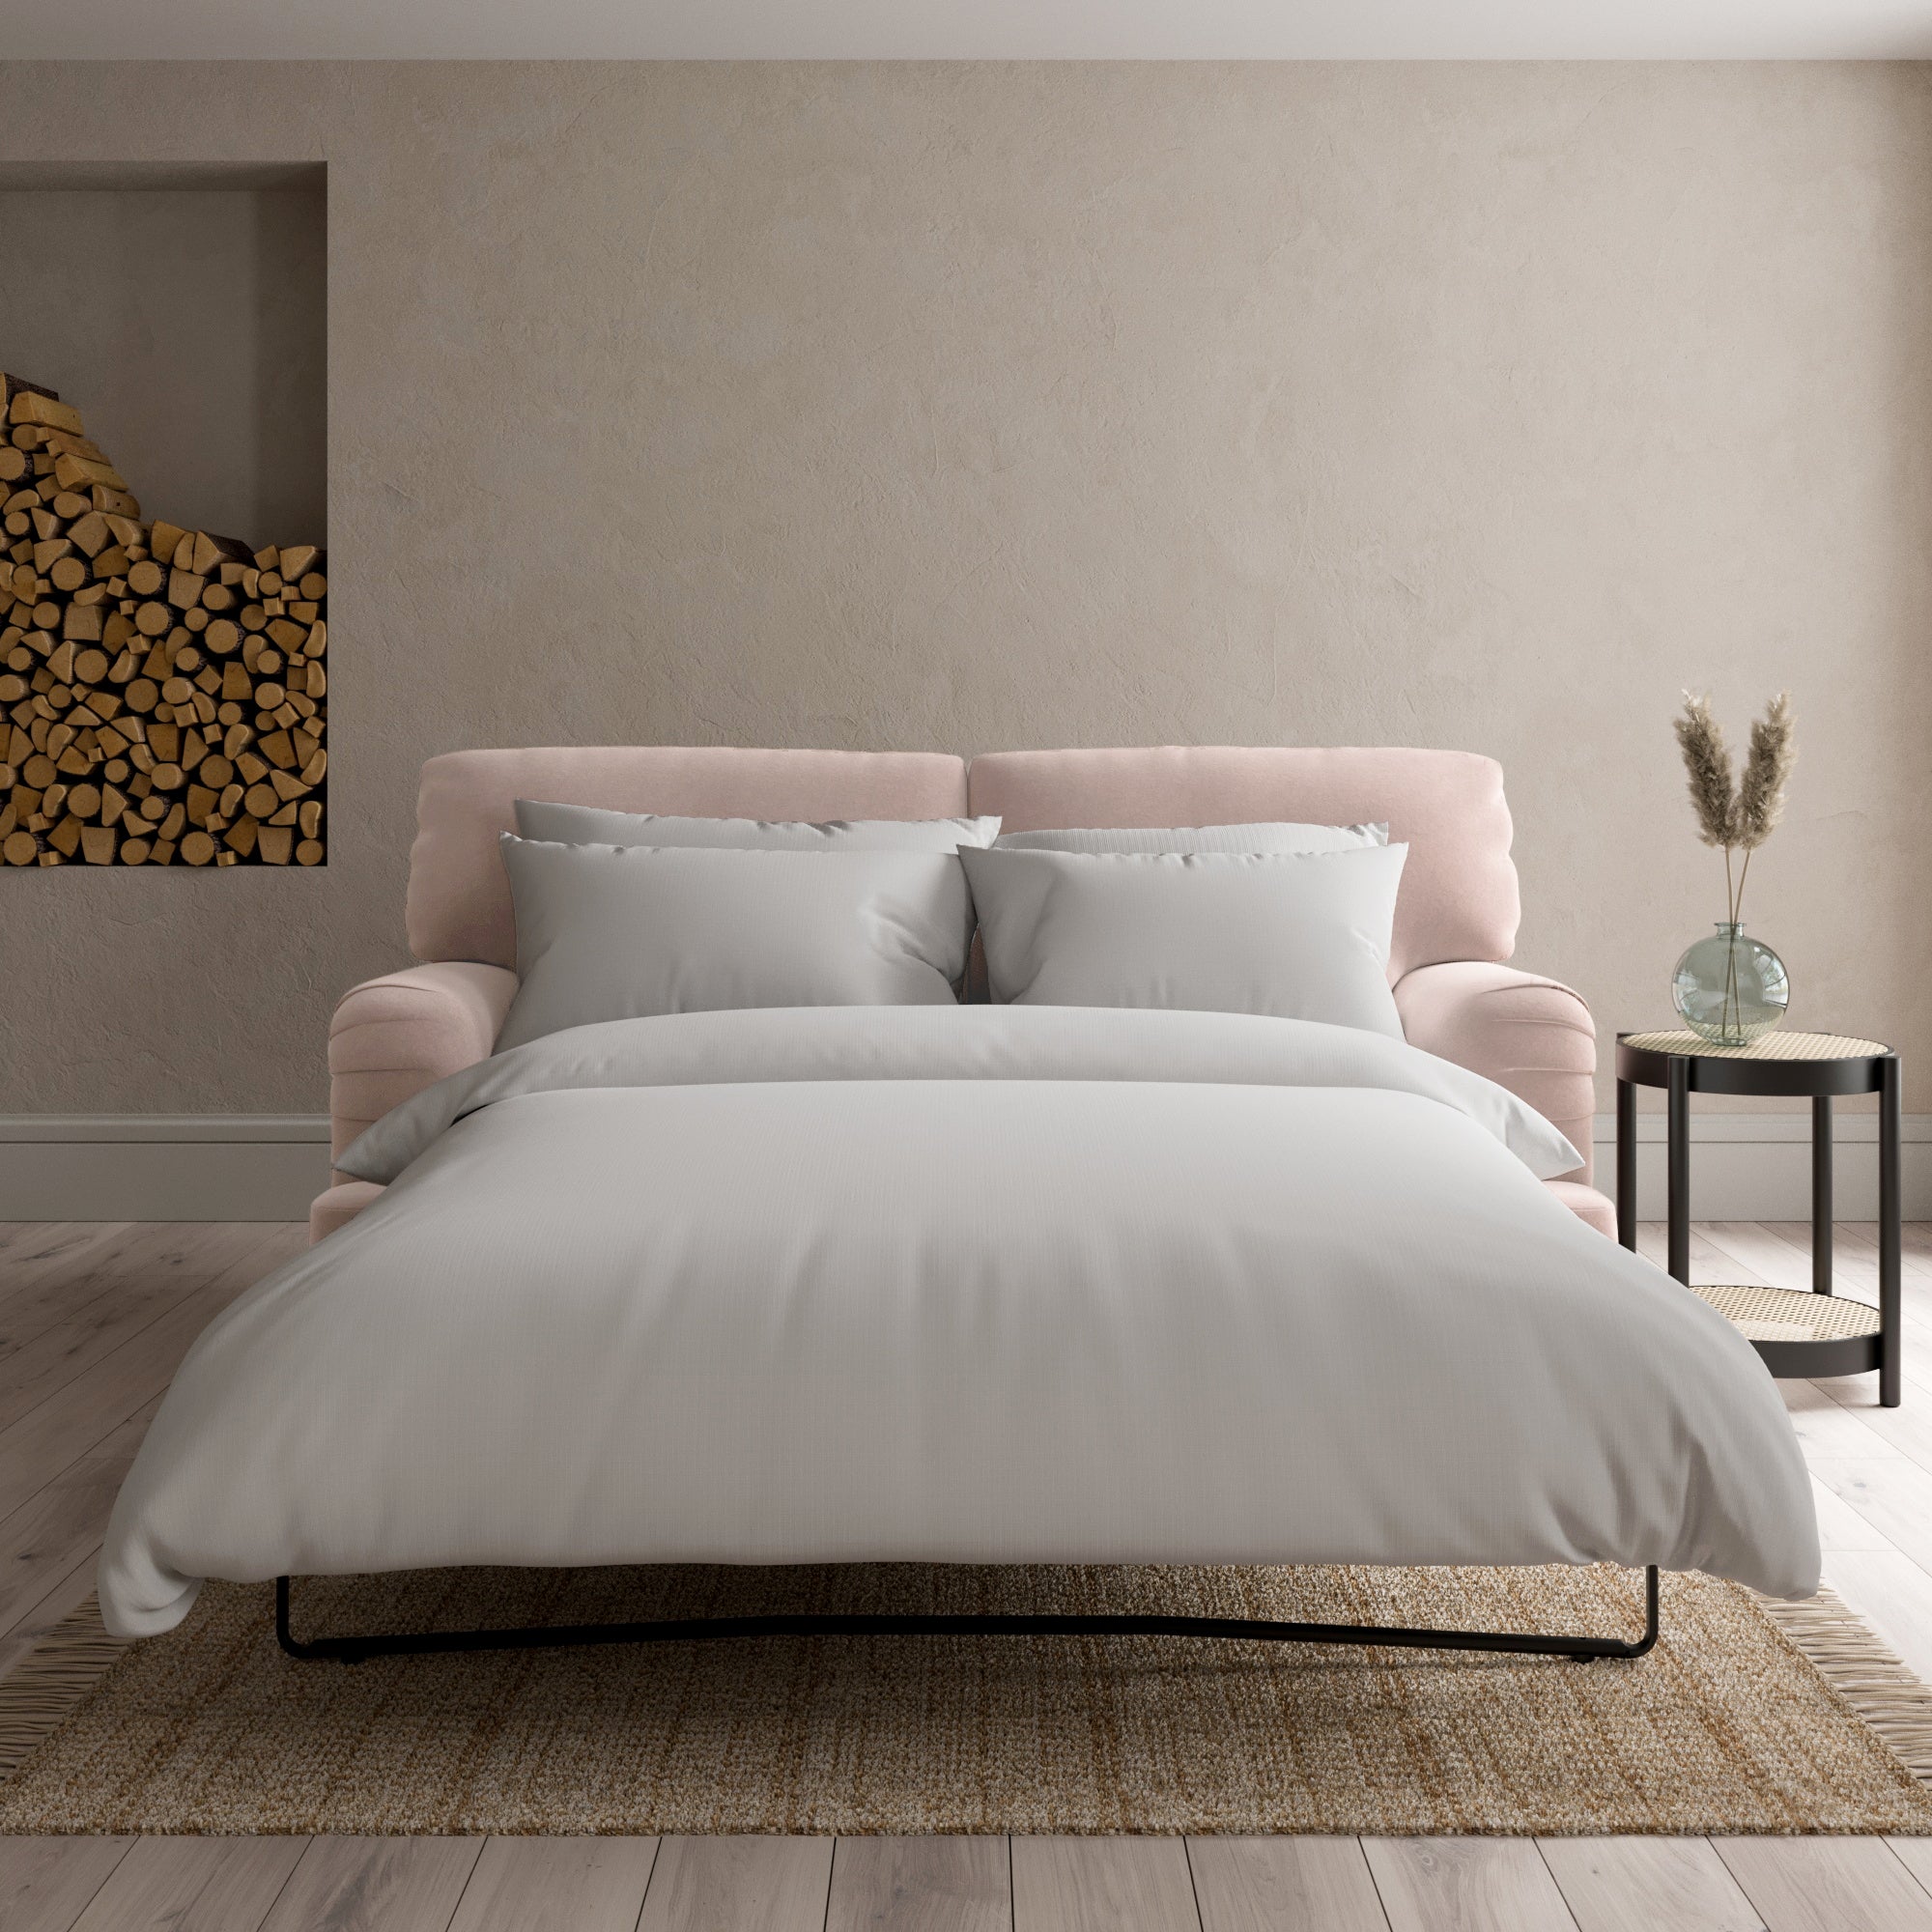 Darwin Luxury Velvet Sofa Bed Luxury Velvet Peach Blush